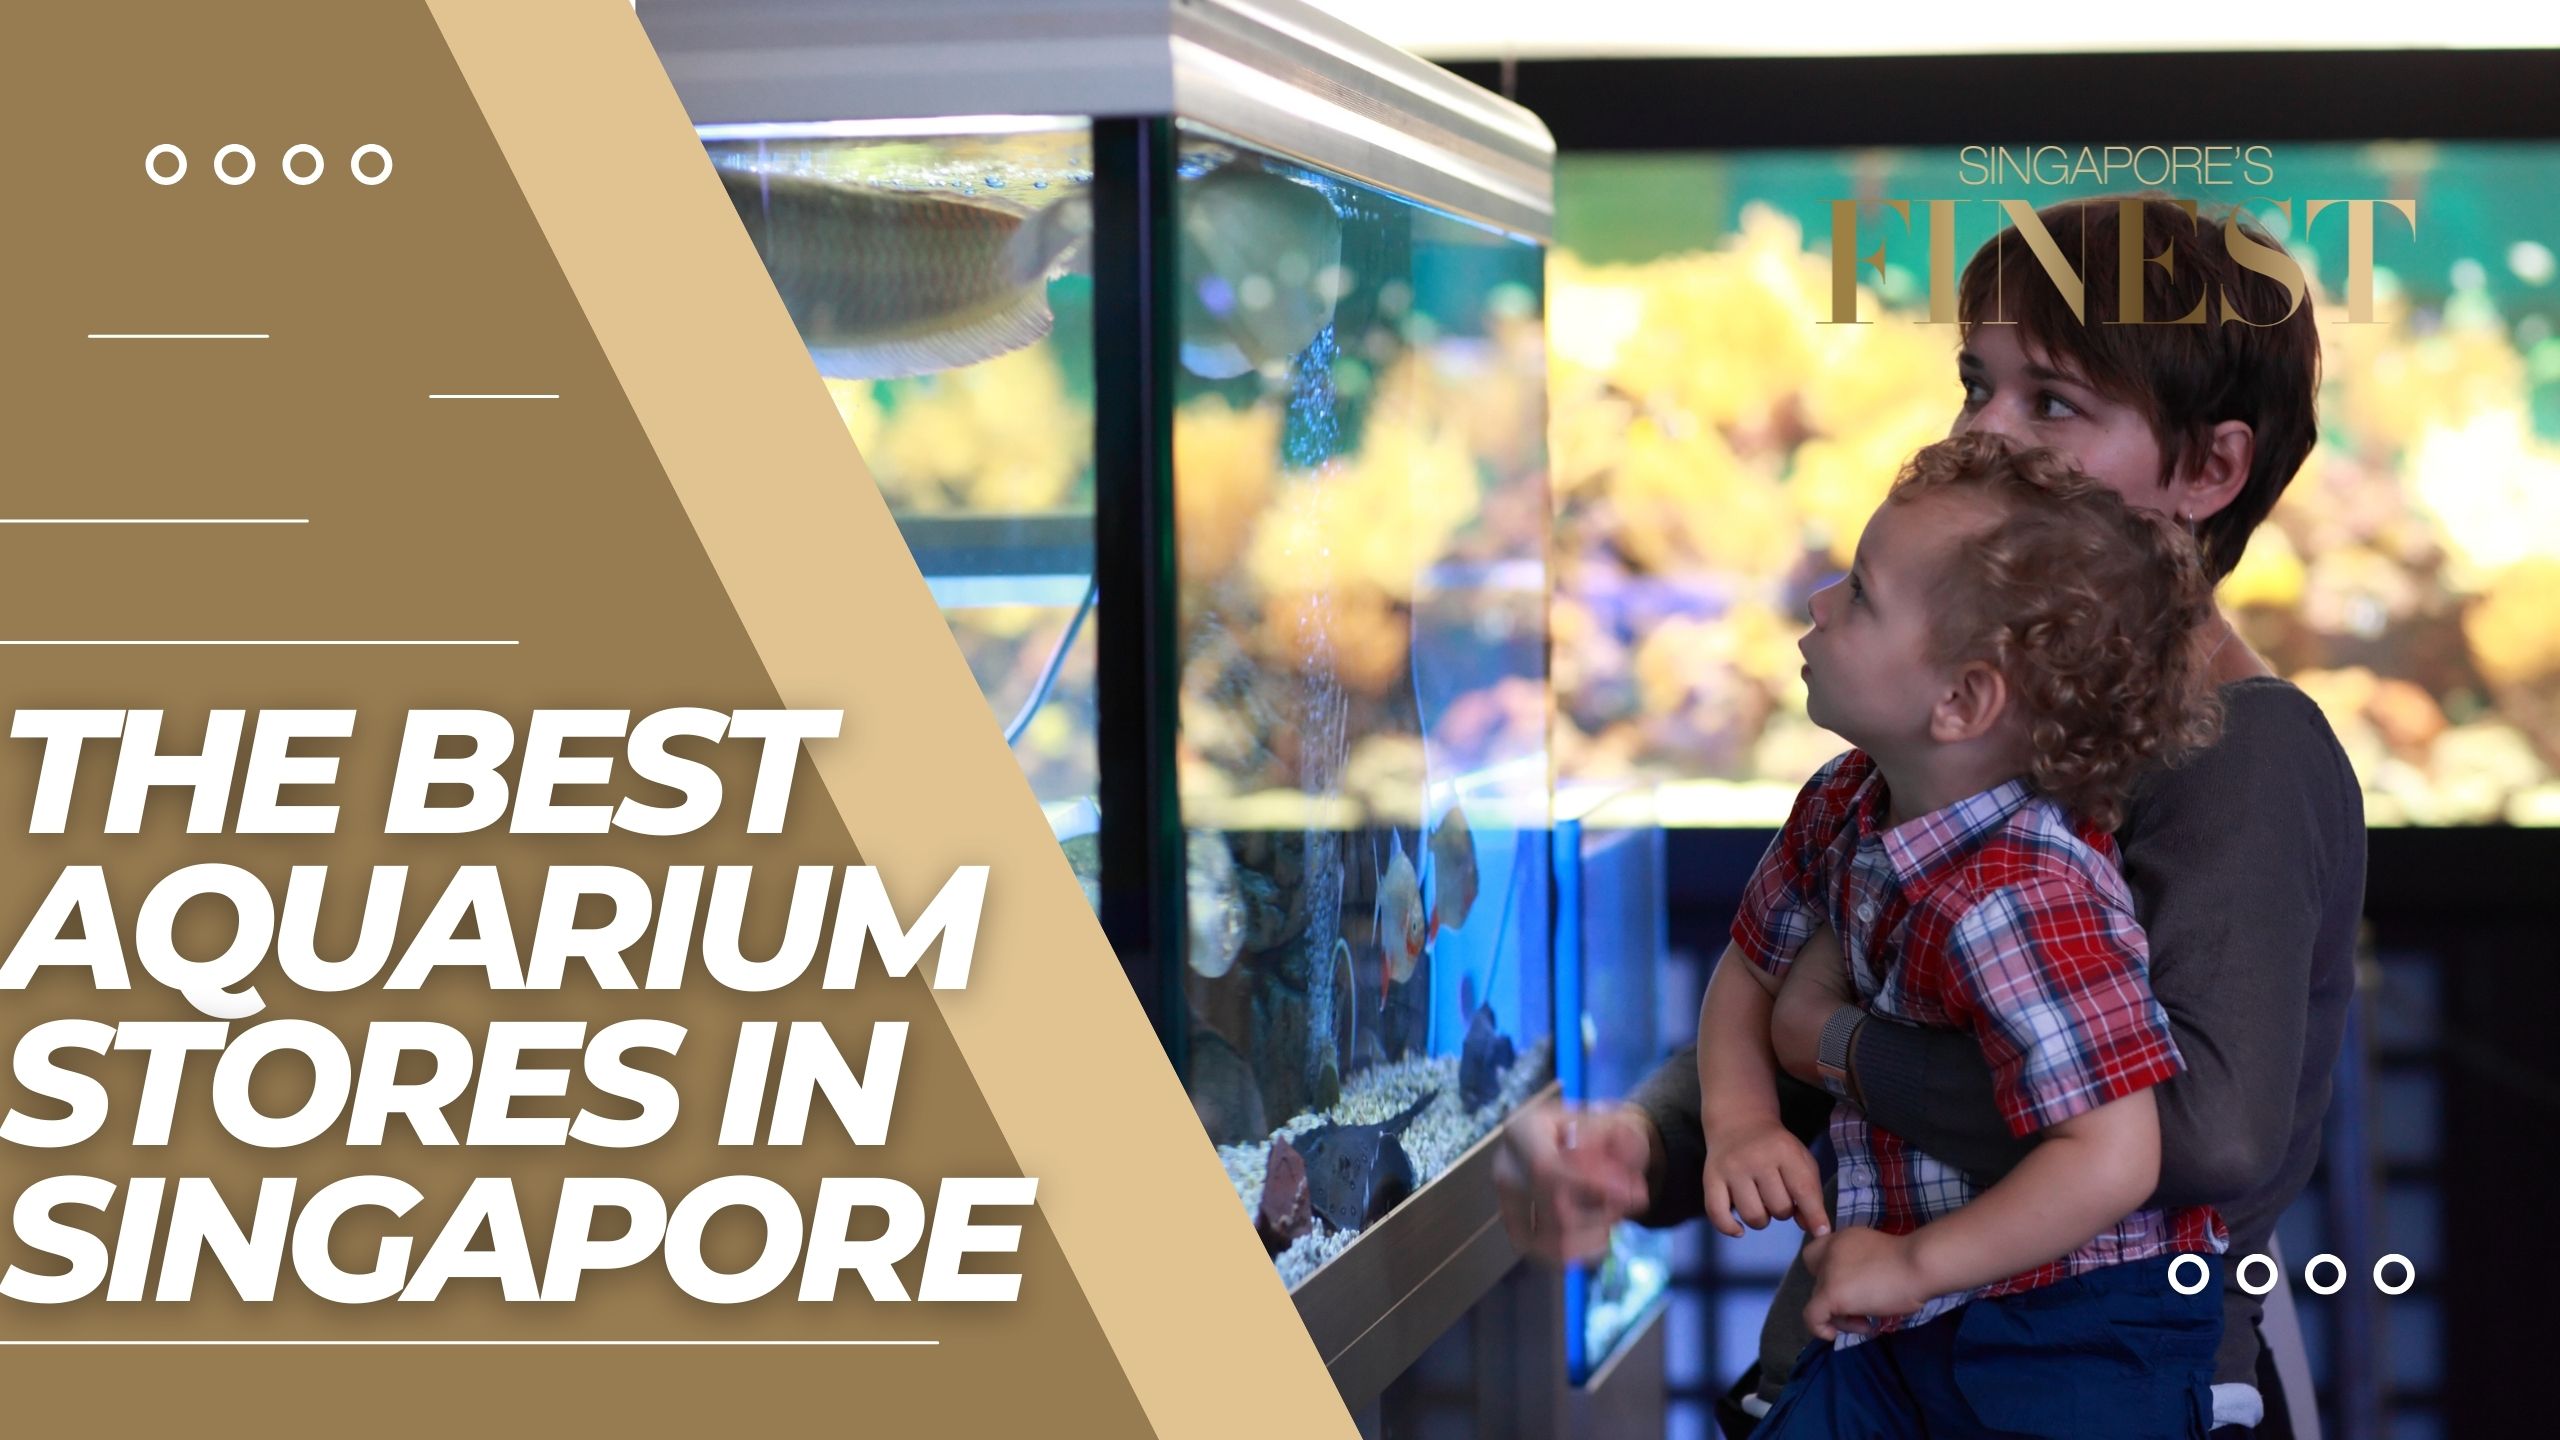 The Finest Aquarium Stores in Singapore